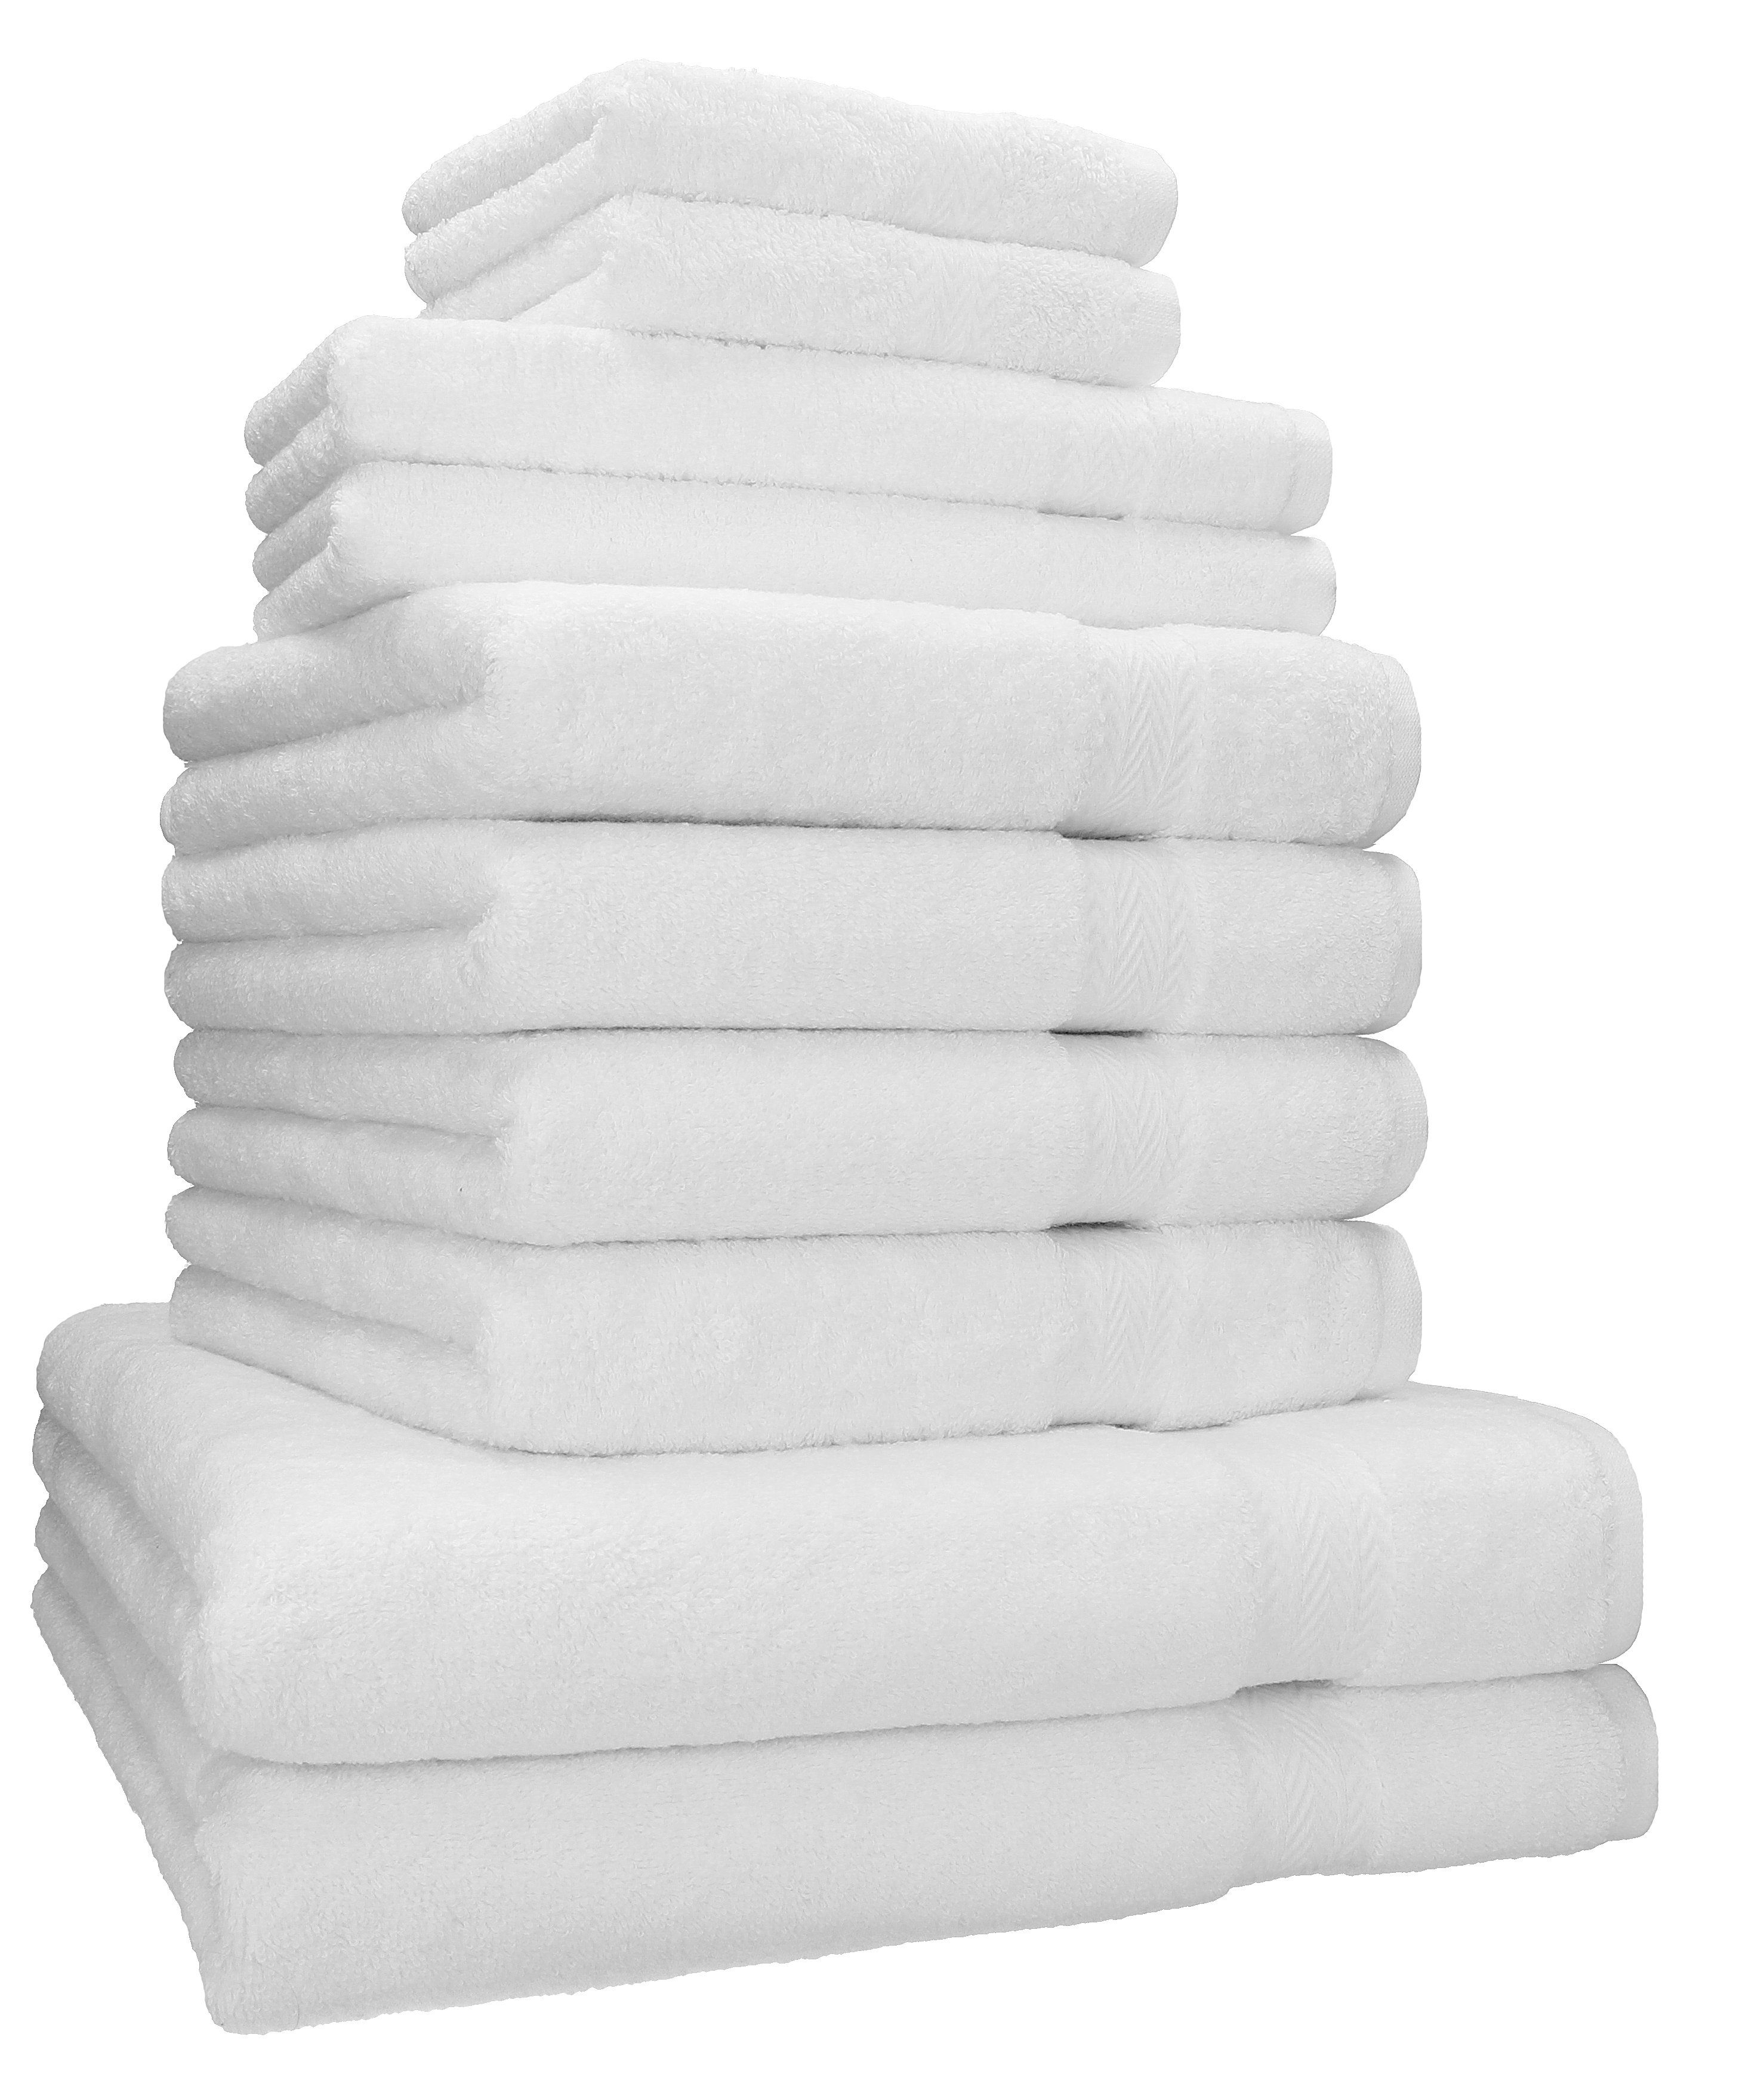 Betz Handtuch Set 10-TLG. Handtuch-Set Classic 100% Baumwolle 2 Duschtücher 4 Handtücher 2 Gästetücher 2 Seiftücher, 100% Baumwolle, (10-tlg) weiß